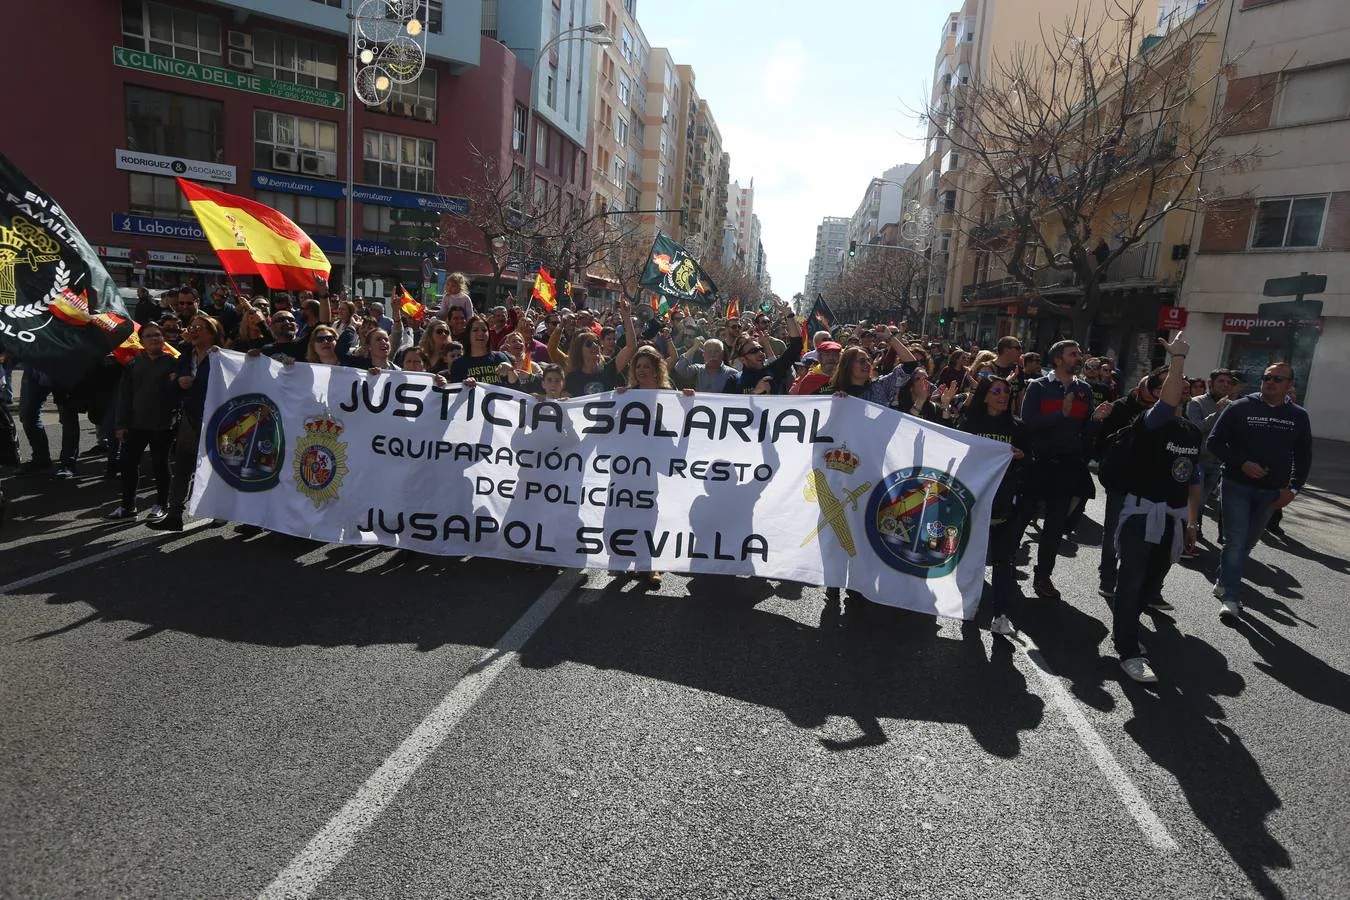 FOTOS: Cádiz, por el equiparación salarial (II)